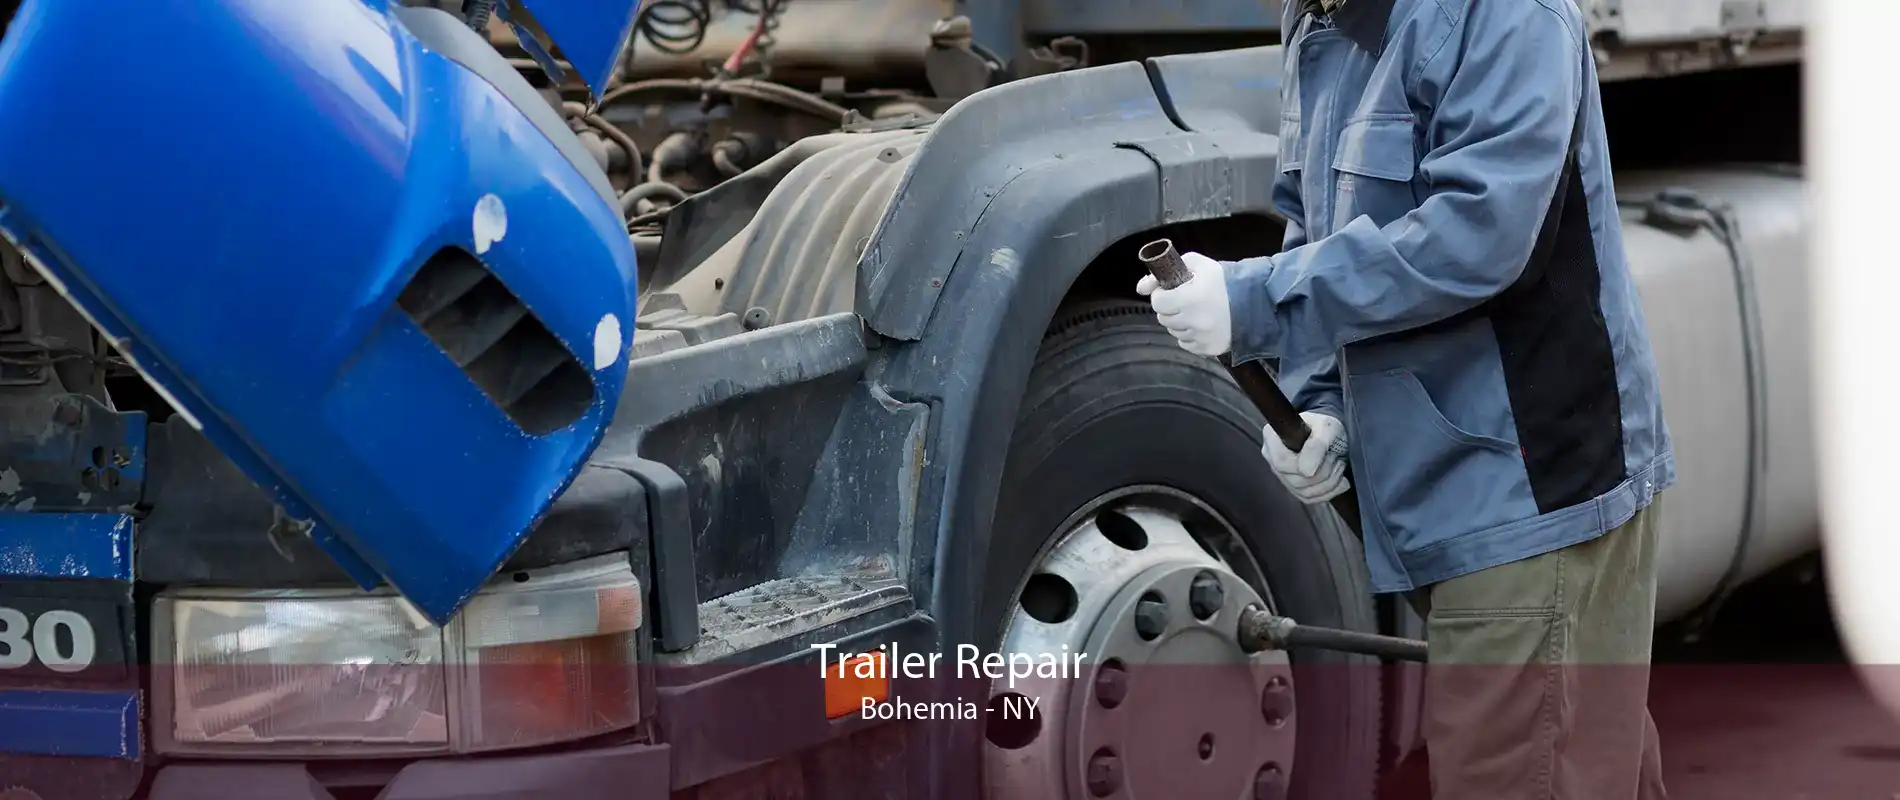 Trailer Repair Bohemia - NY